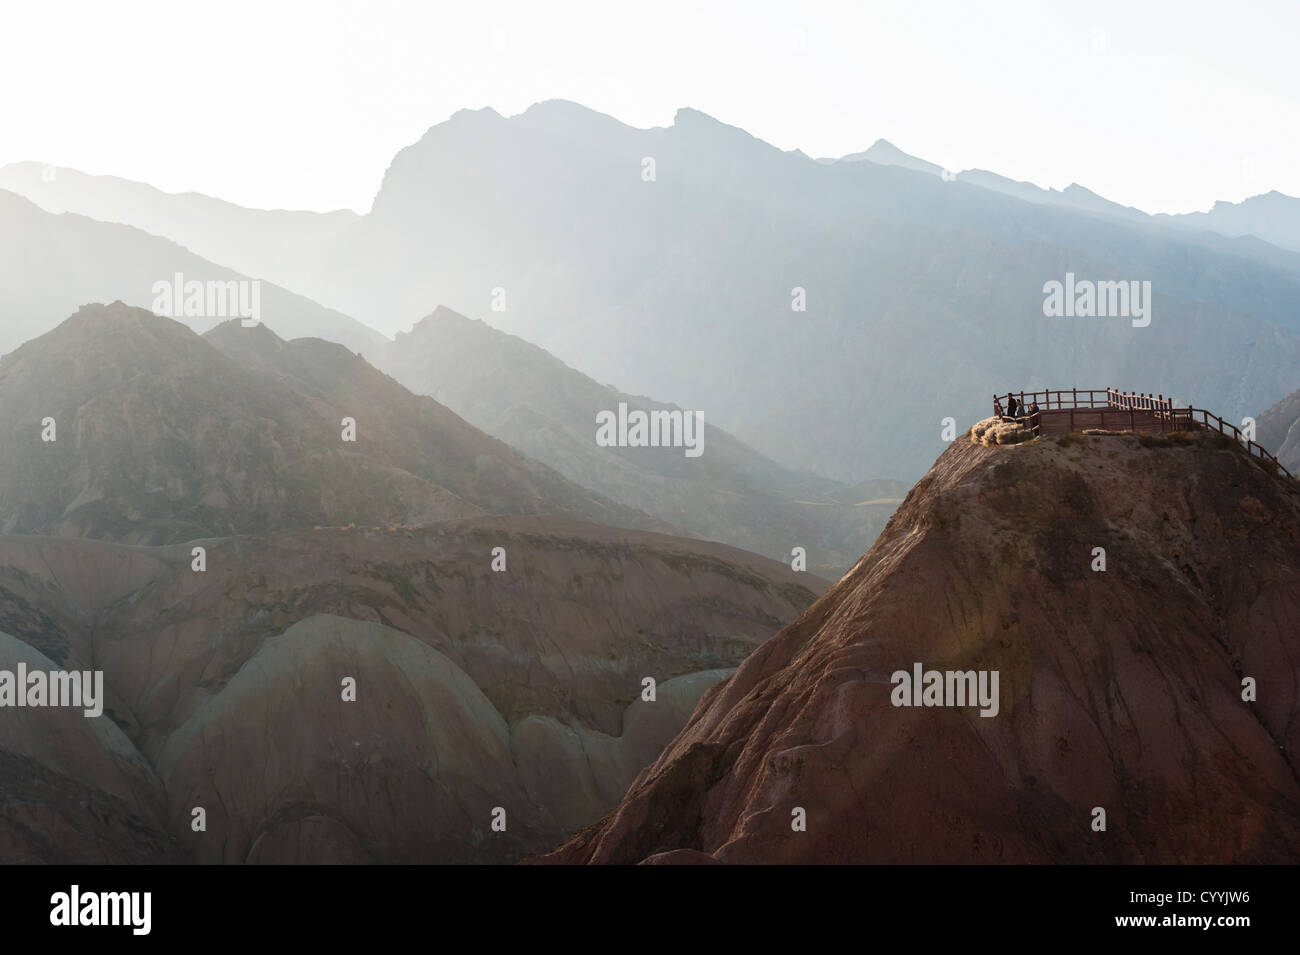 Los turistas en la plataforma de visualización ver Danxia landform en Zhangye, Gansu de China Foto de stock